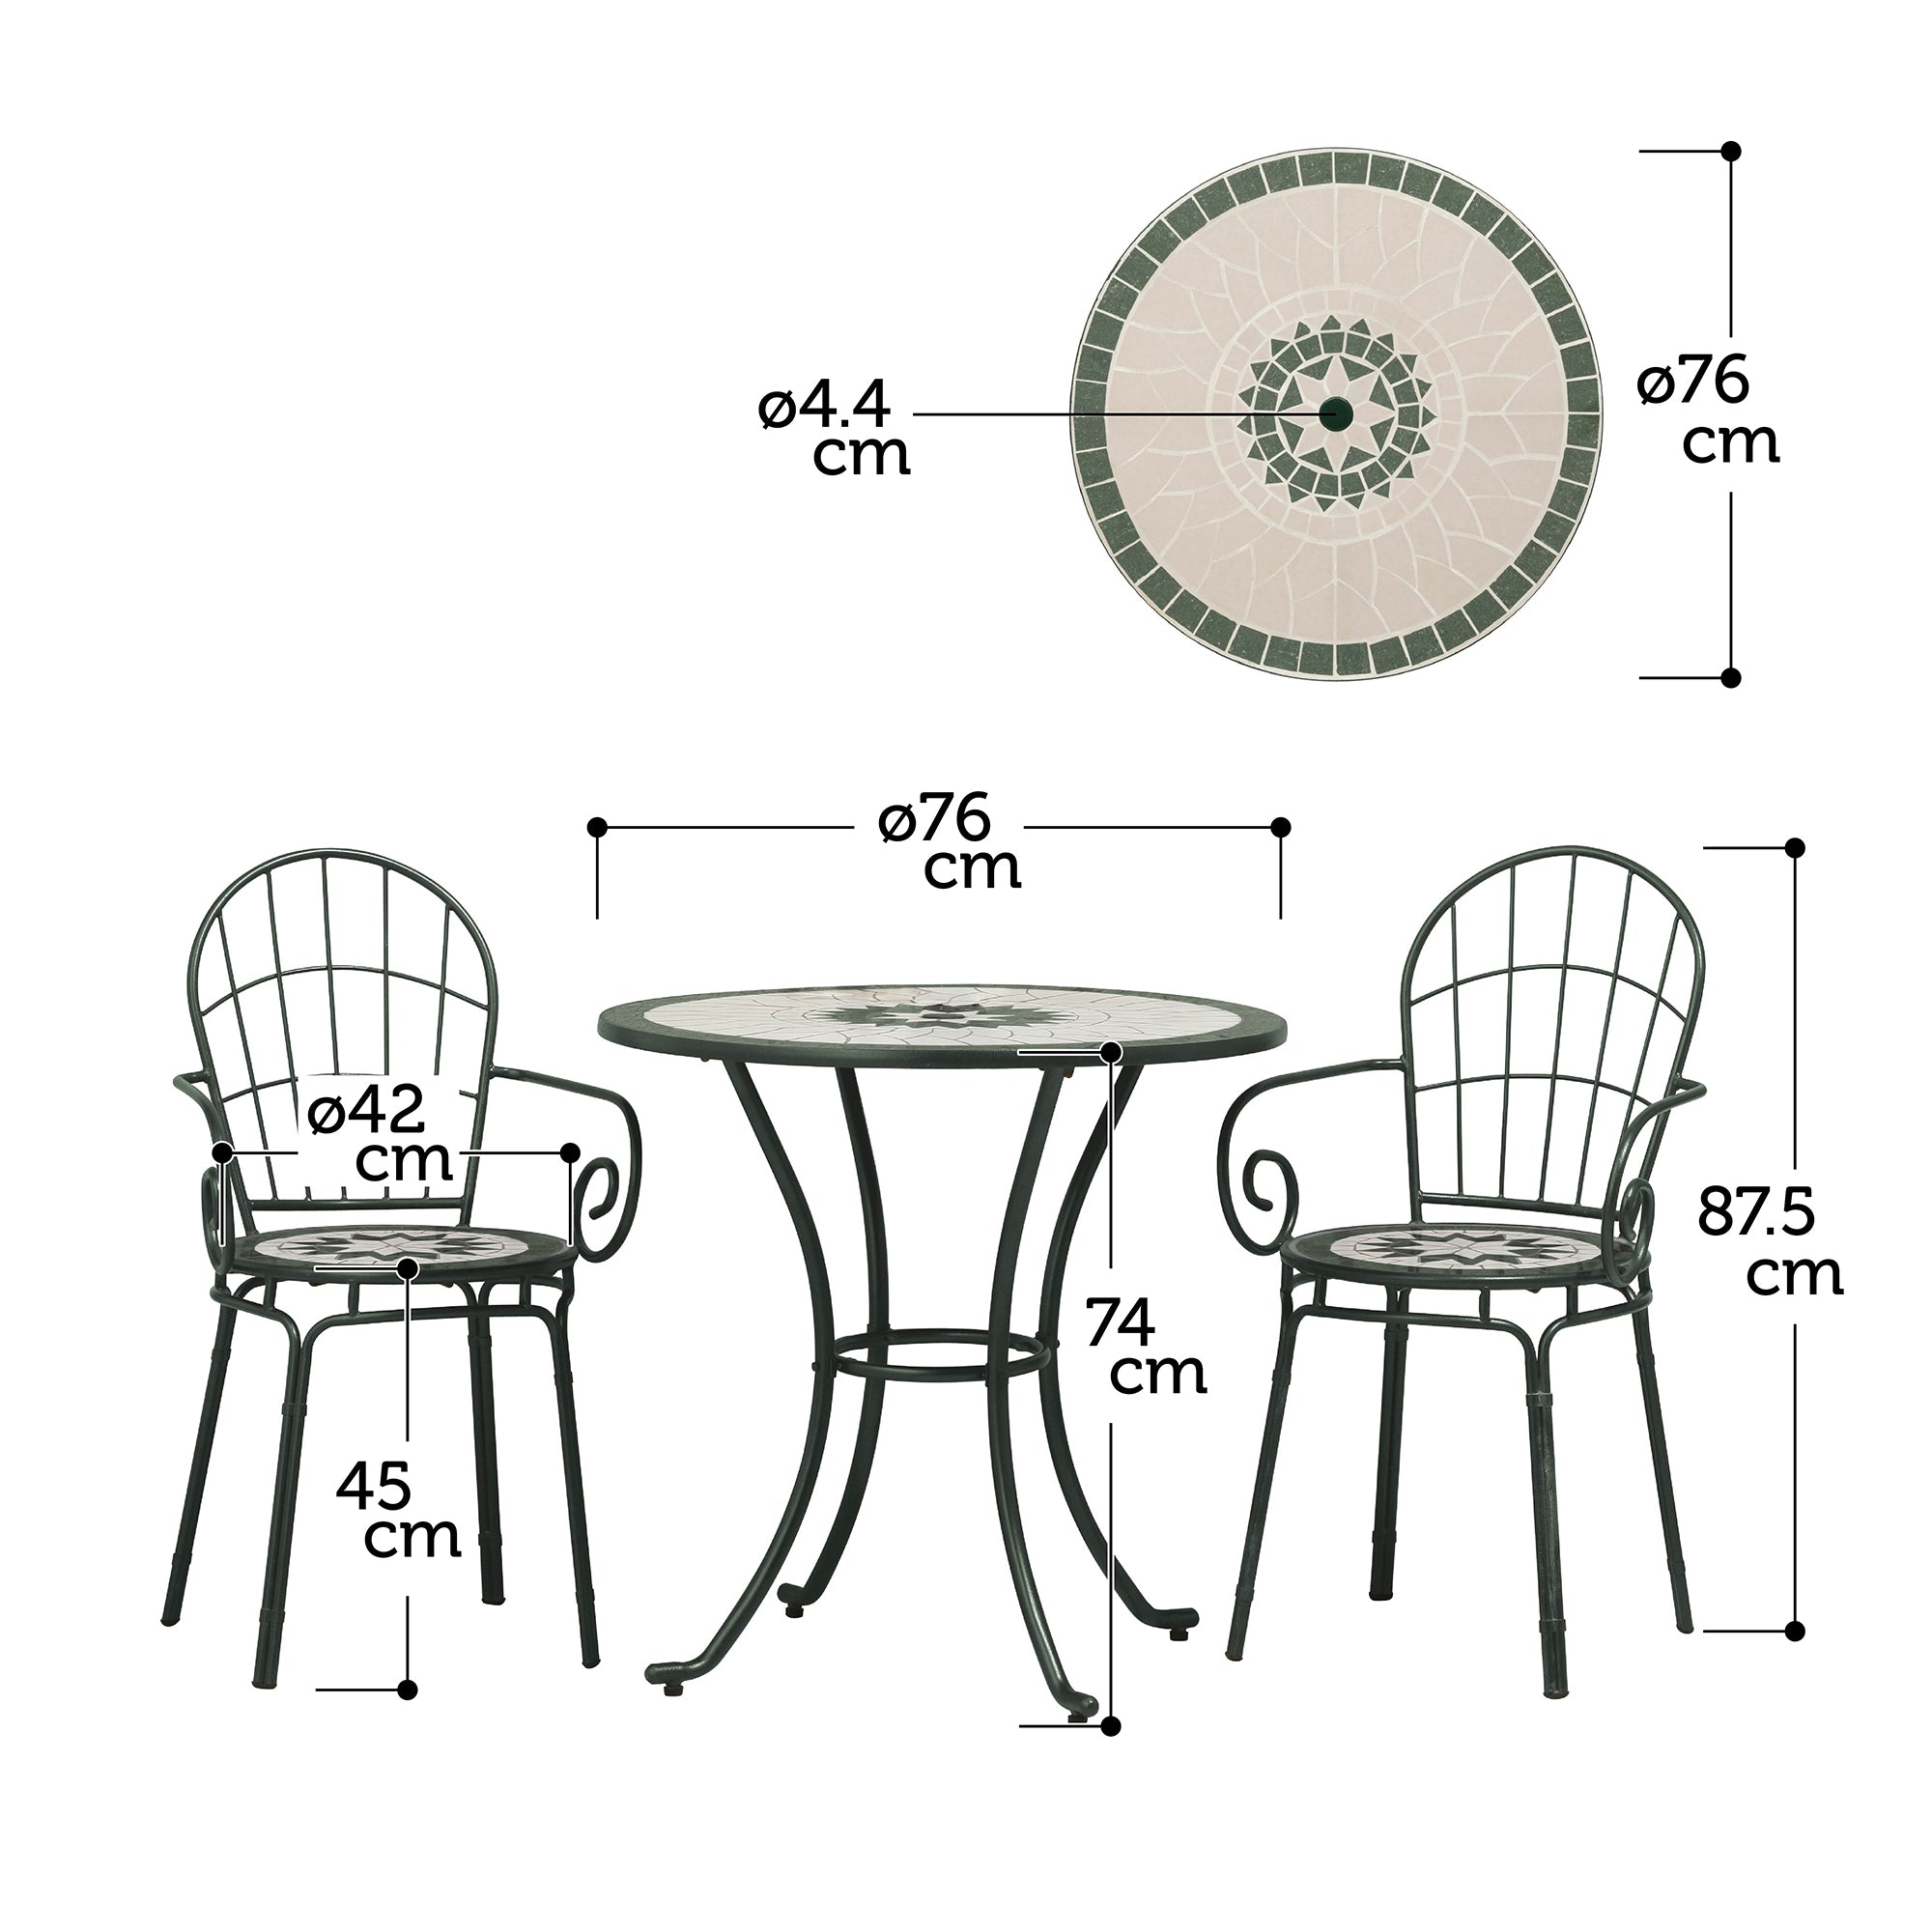 Mozaic Table & Chair Set